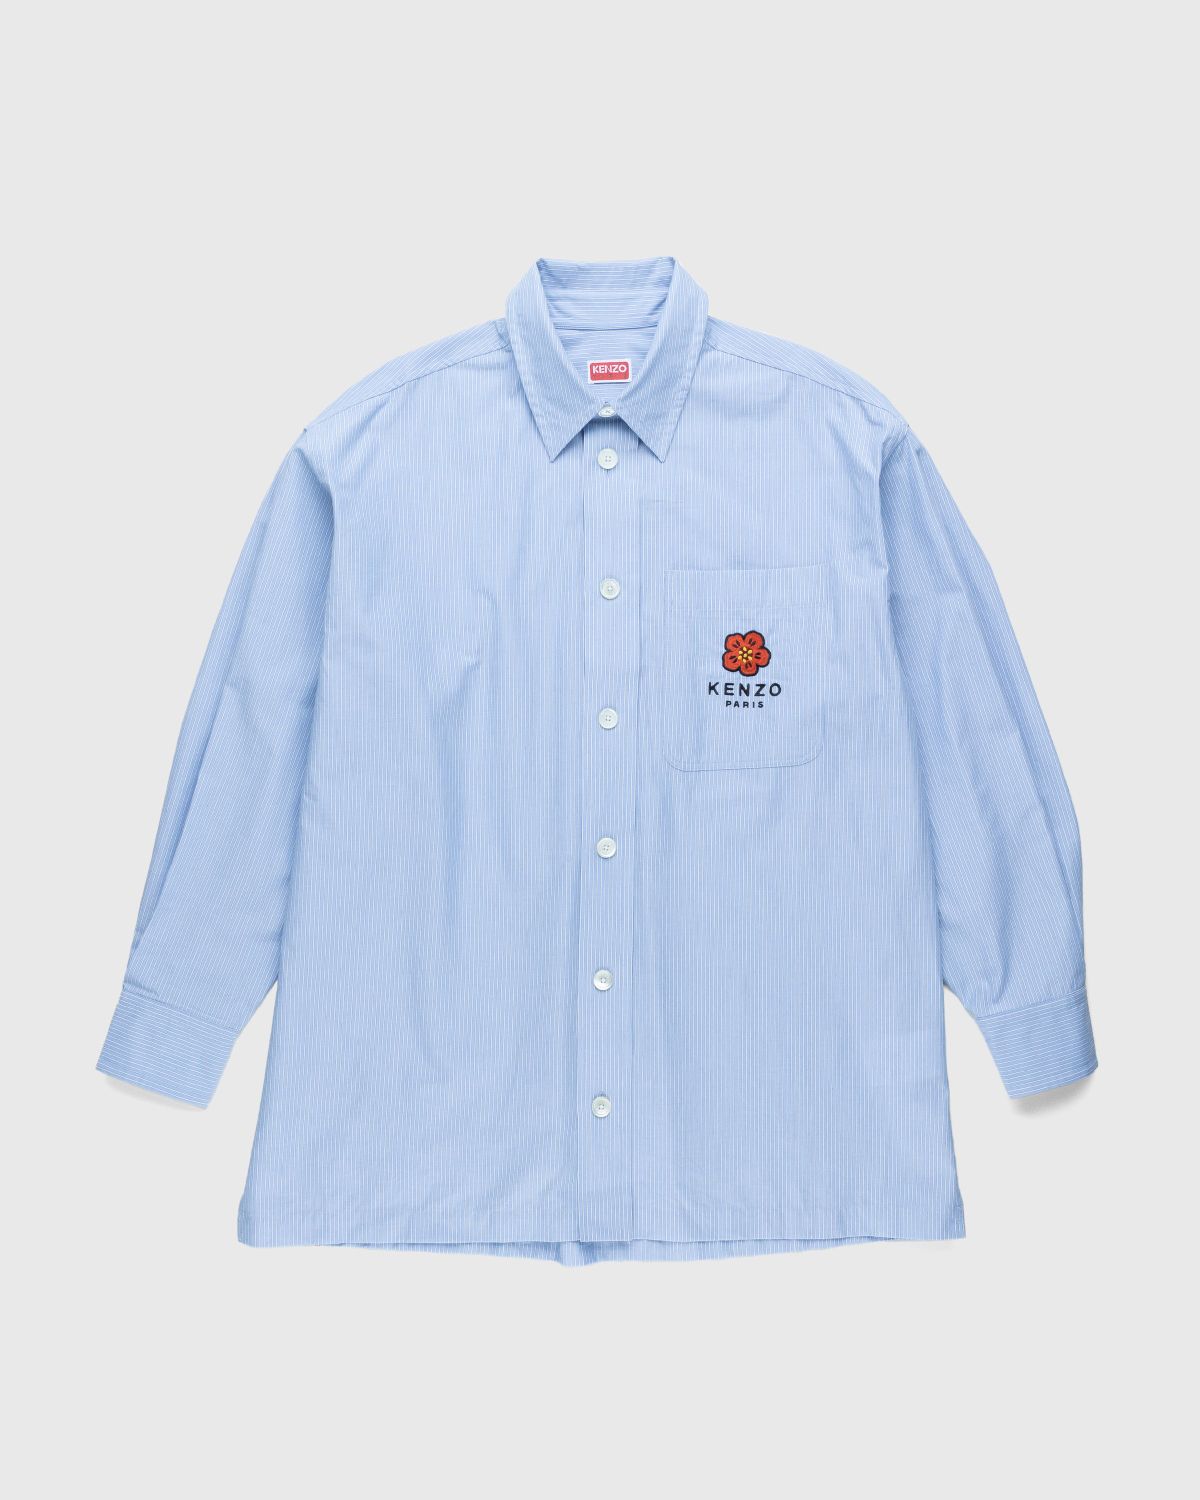 Kenzo – Boke Flower Crest Overshirt Sky Blue - Shirts - Blue - Image 1